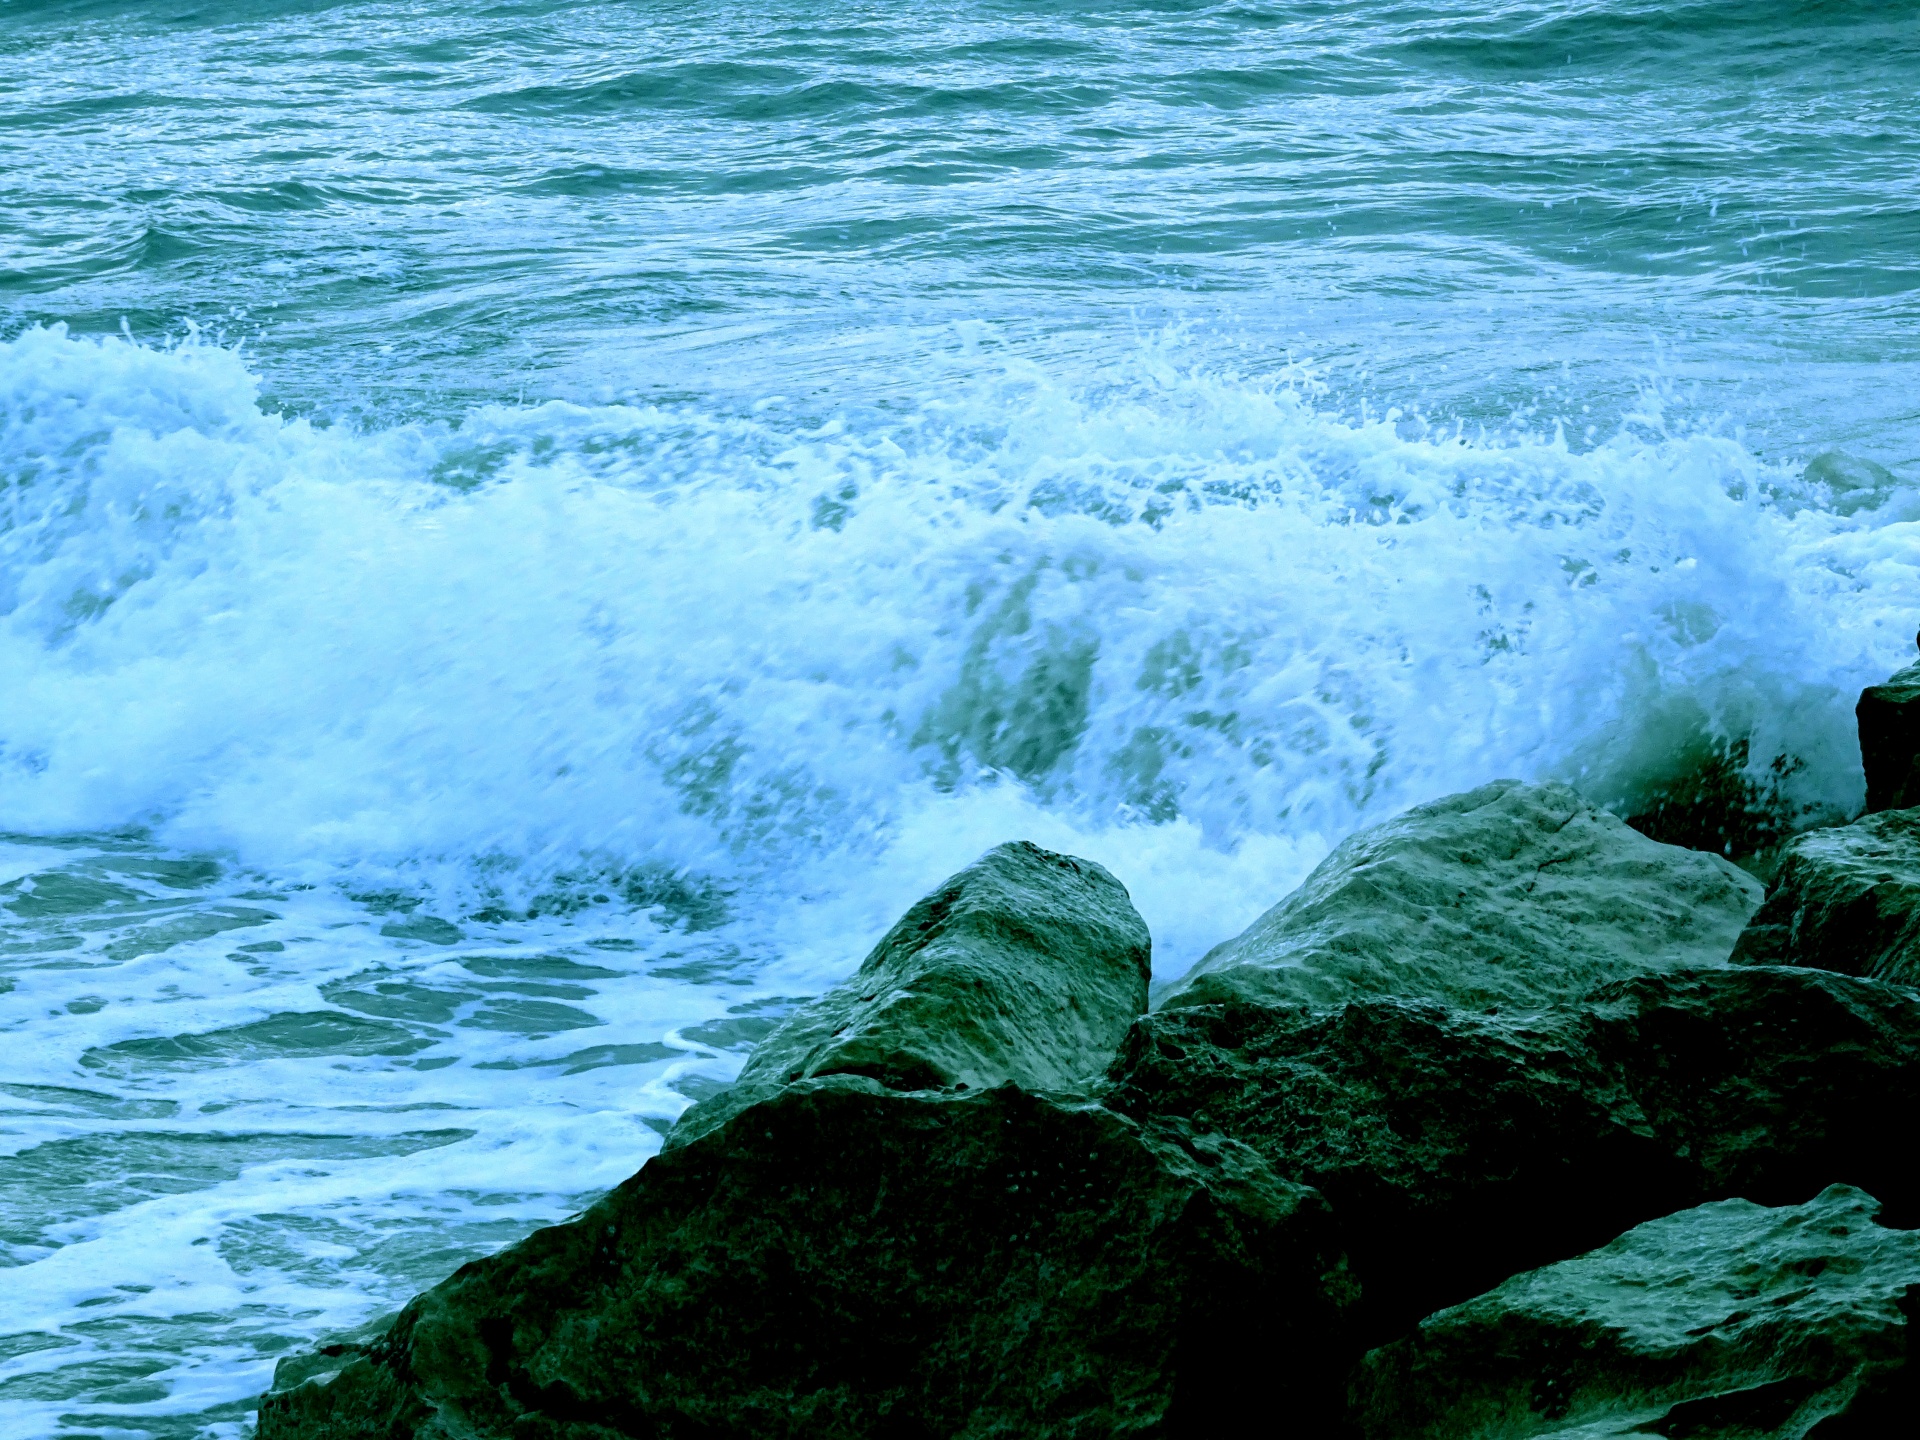 Ondas do mar quebrando nas pedras